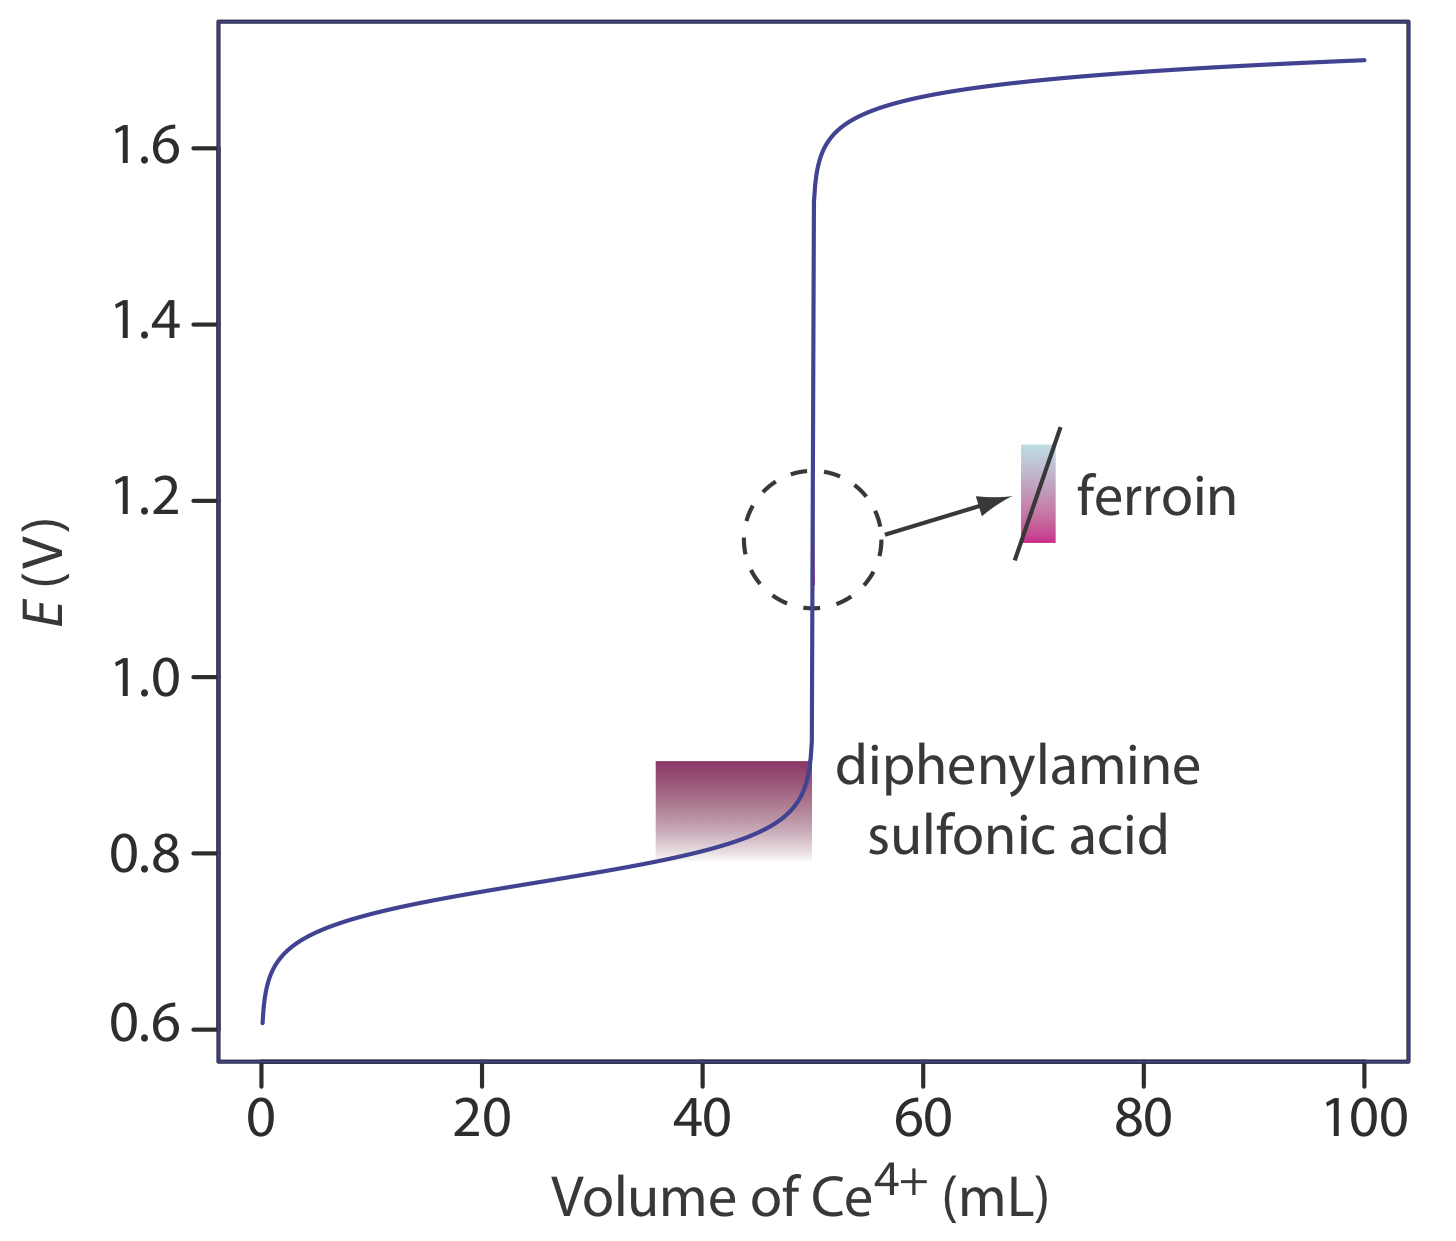 El punto de equivalencia del ácido difenilaminosulfónico está entre .75 y .9 E (V) y la ferroína tiene un punto de equivalencia alrededor de 1.1 E (V).